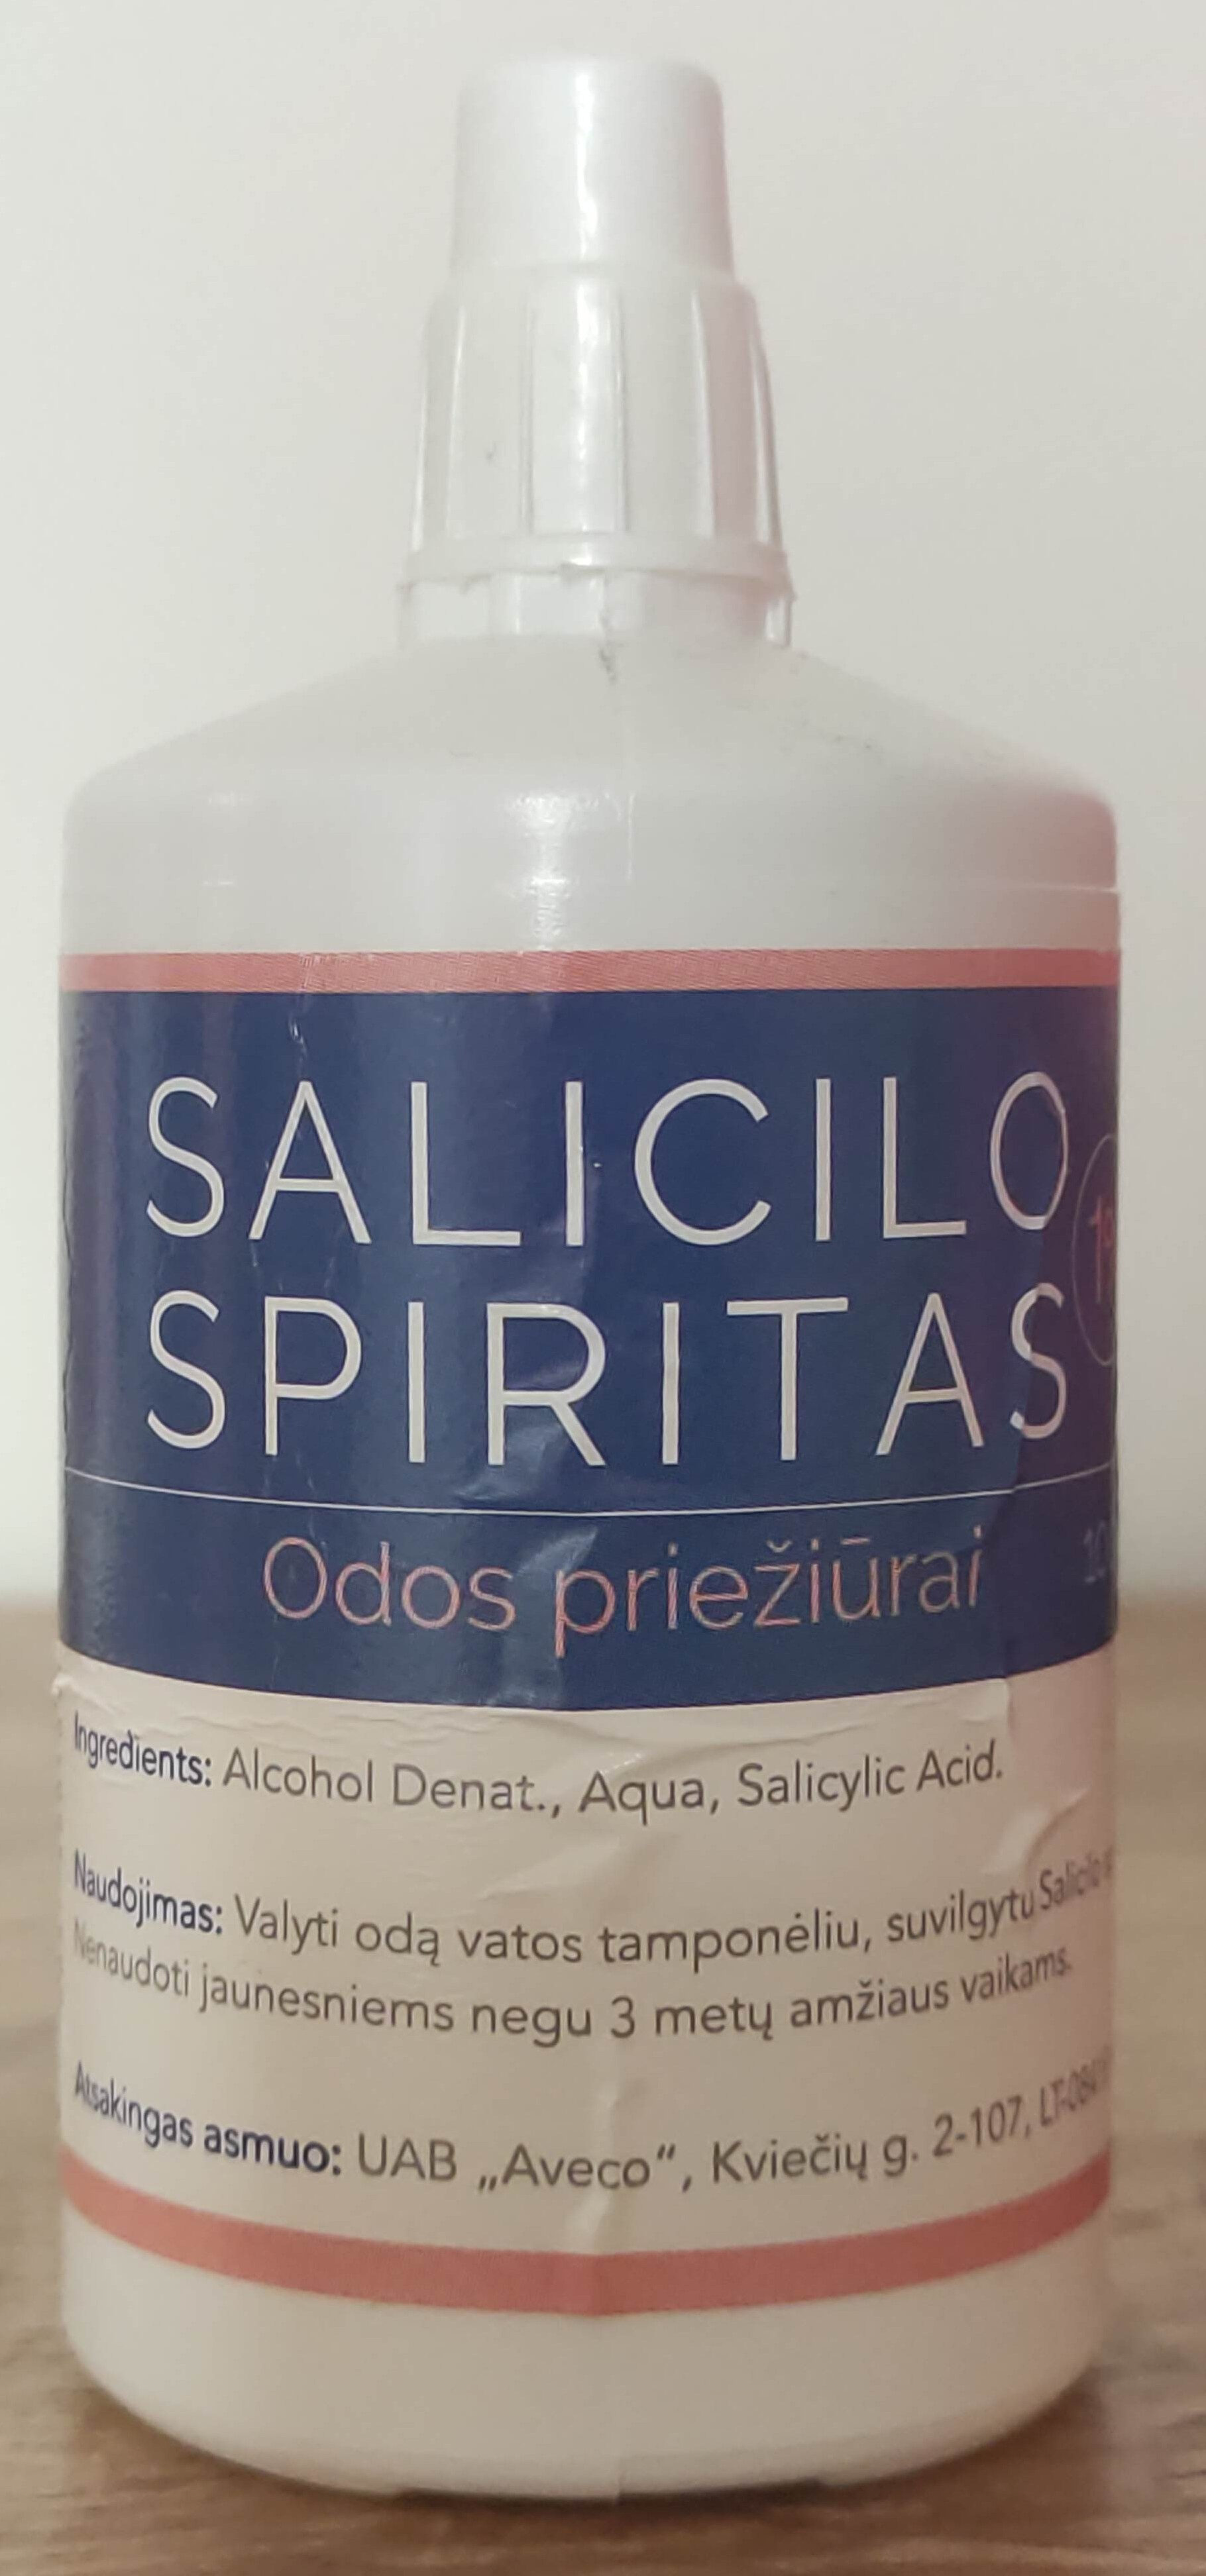 Salicilo spiritas - Product - lt